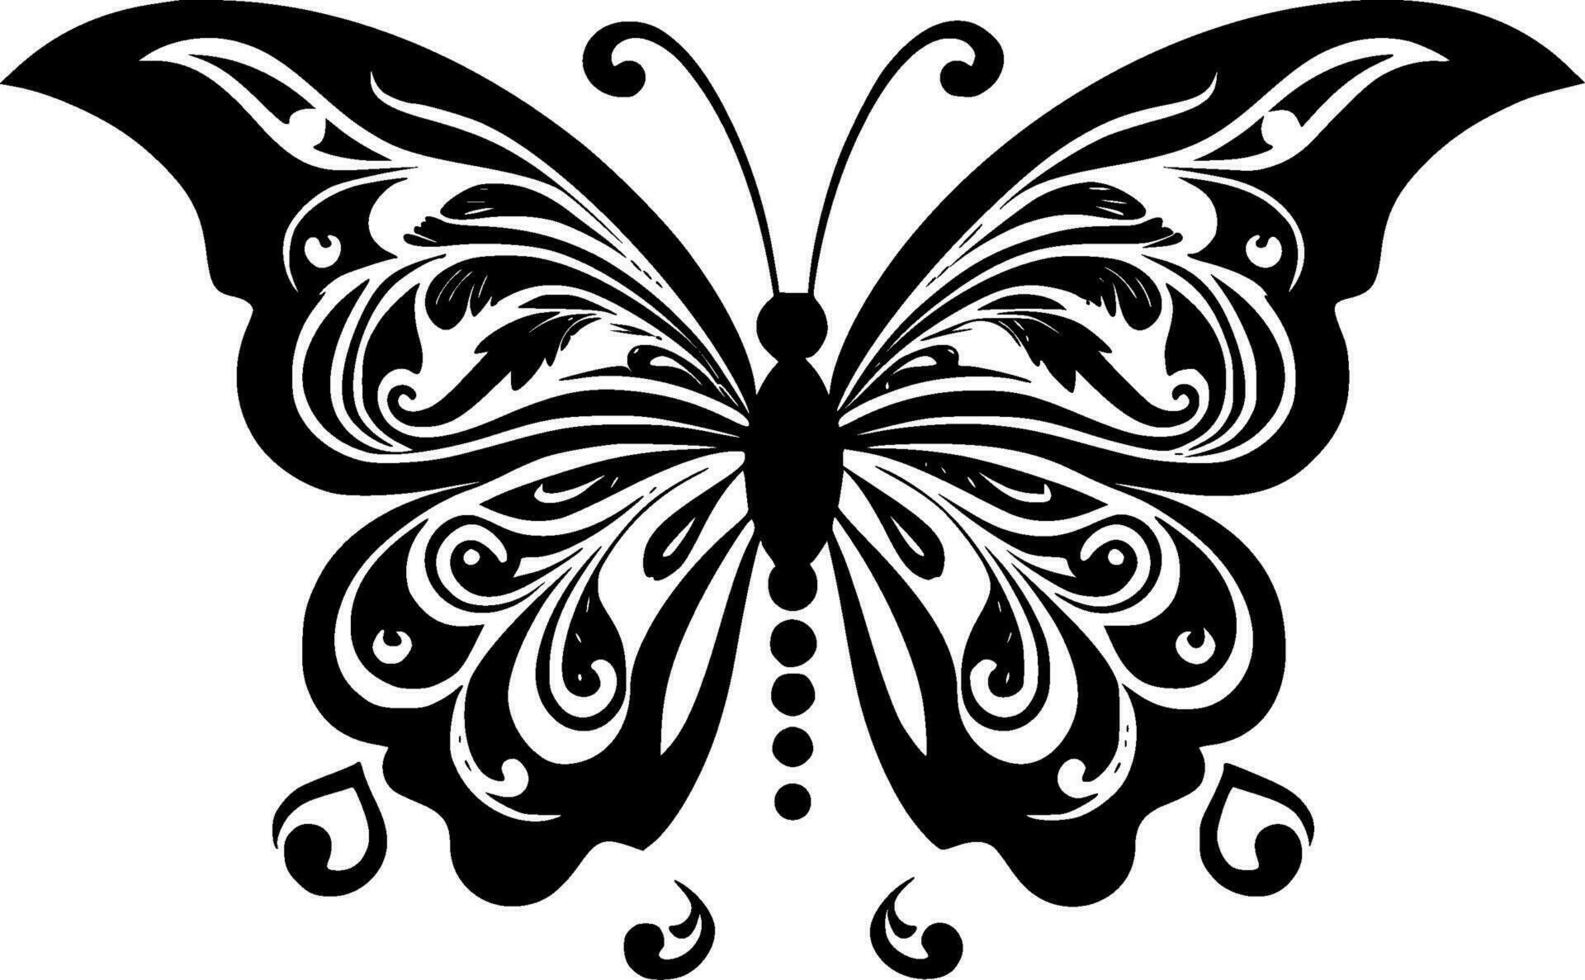 fjäril, svart och vit vektor illustration